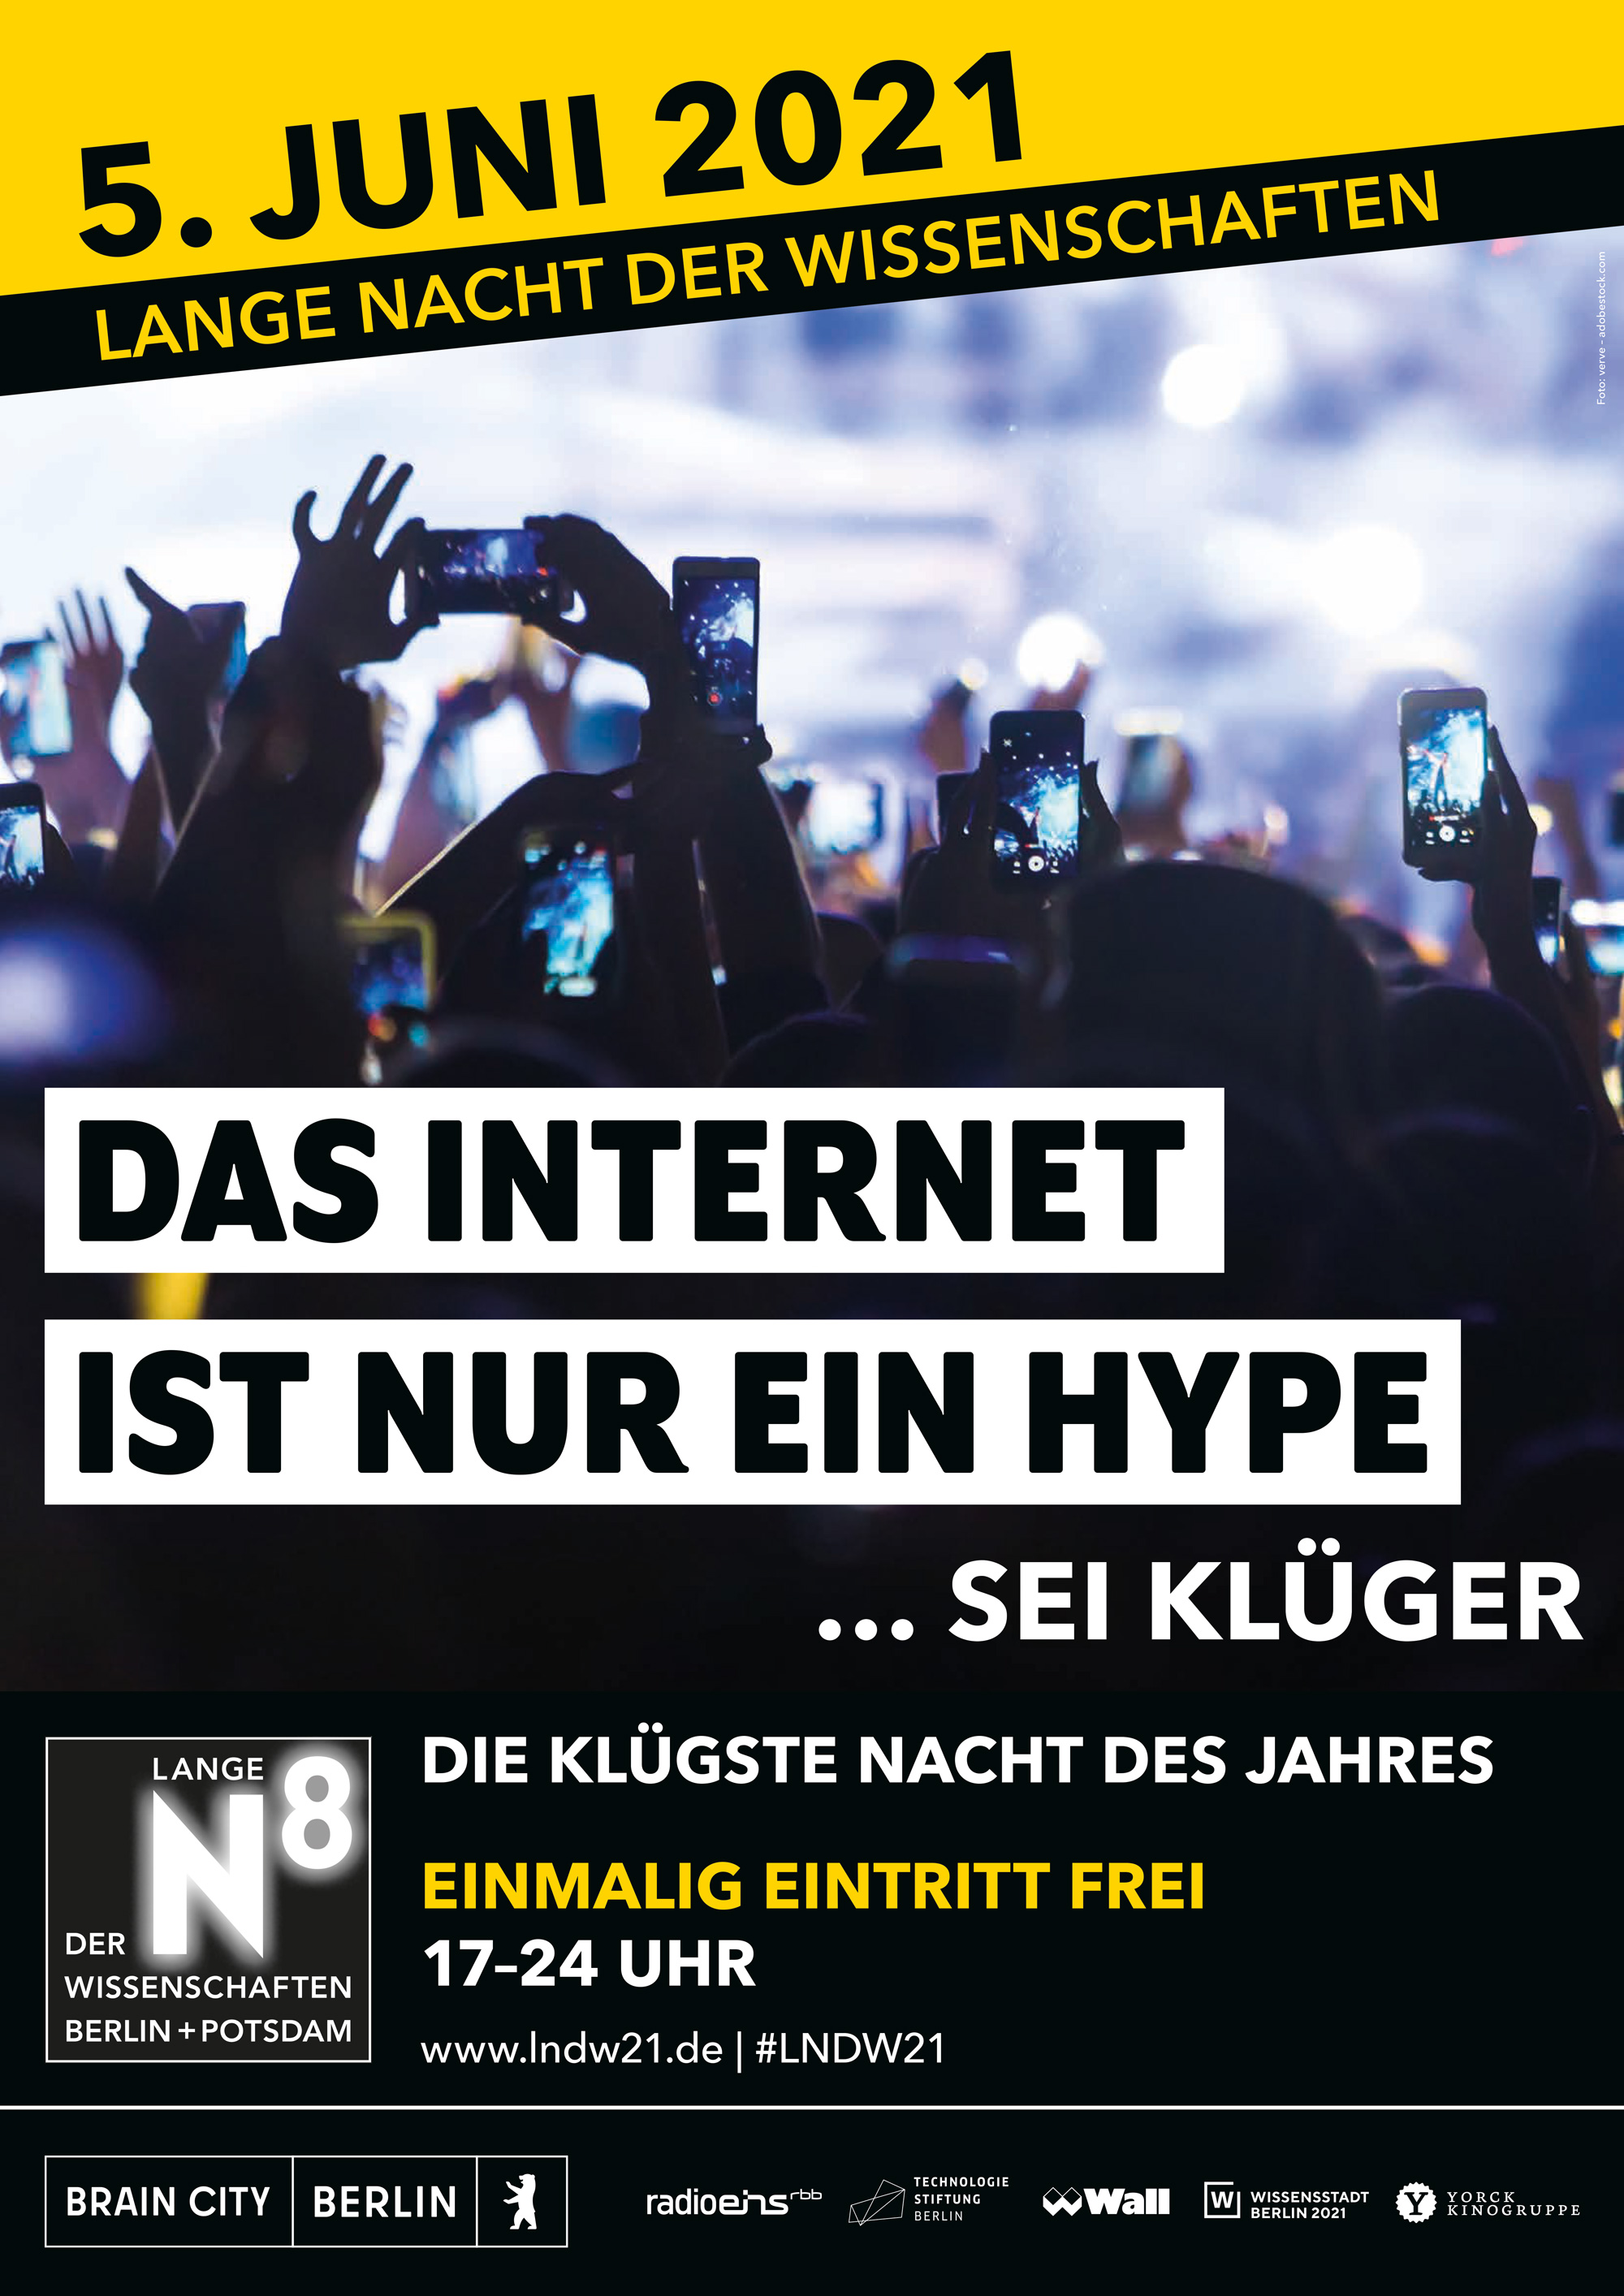 LHLK – LNDW; Kampagne; Fake News; Lange Nacht der Wissenschaften Berlin